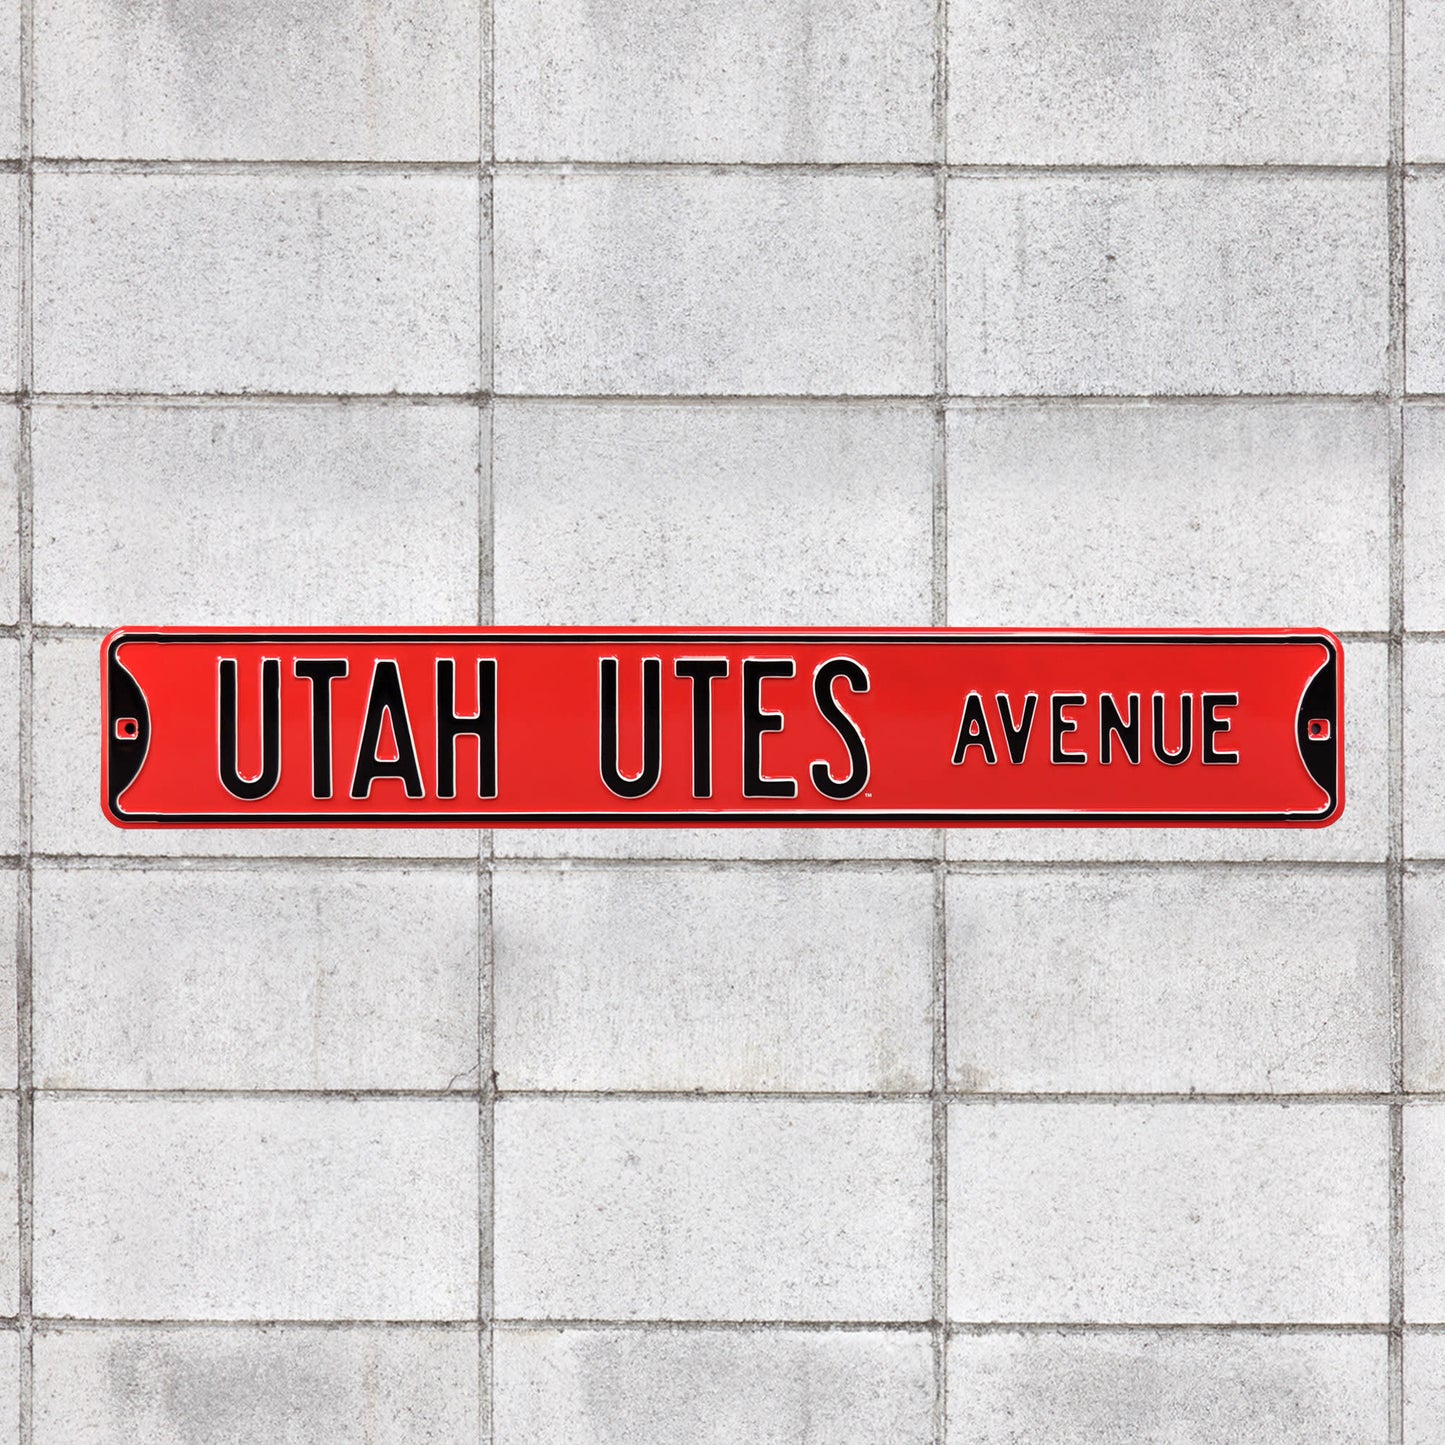 Utah Utes: Utah Utes Avenue - Officially Licensed Metal Street Sign